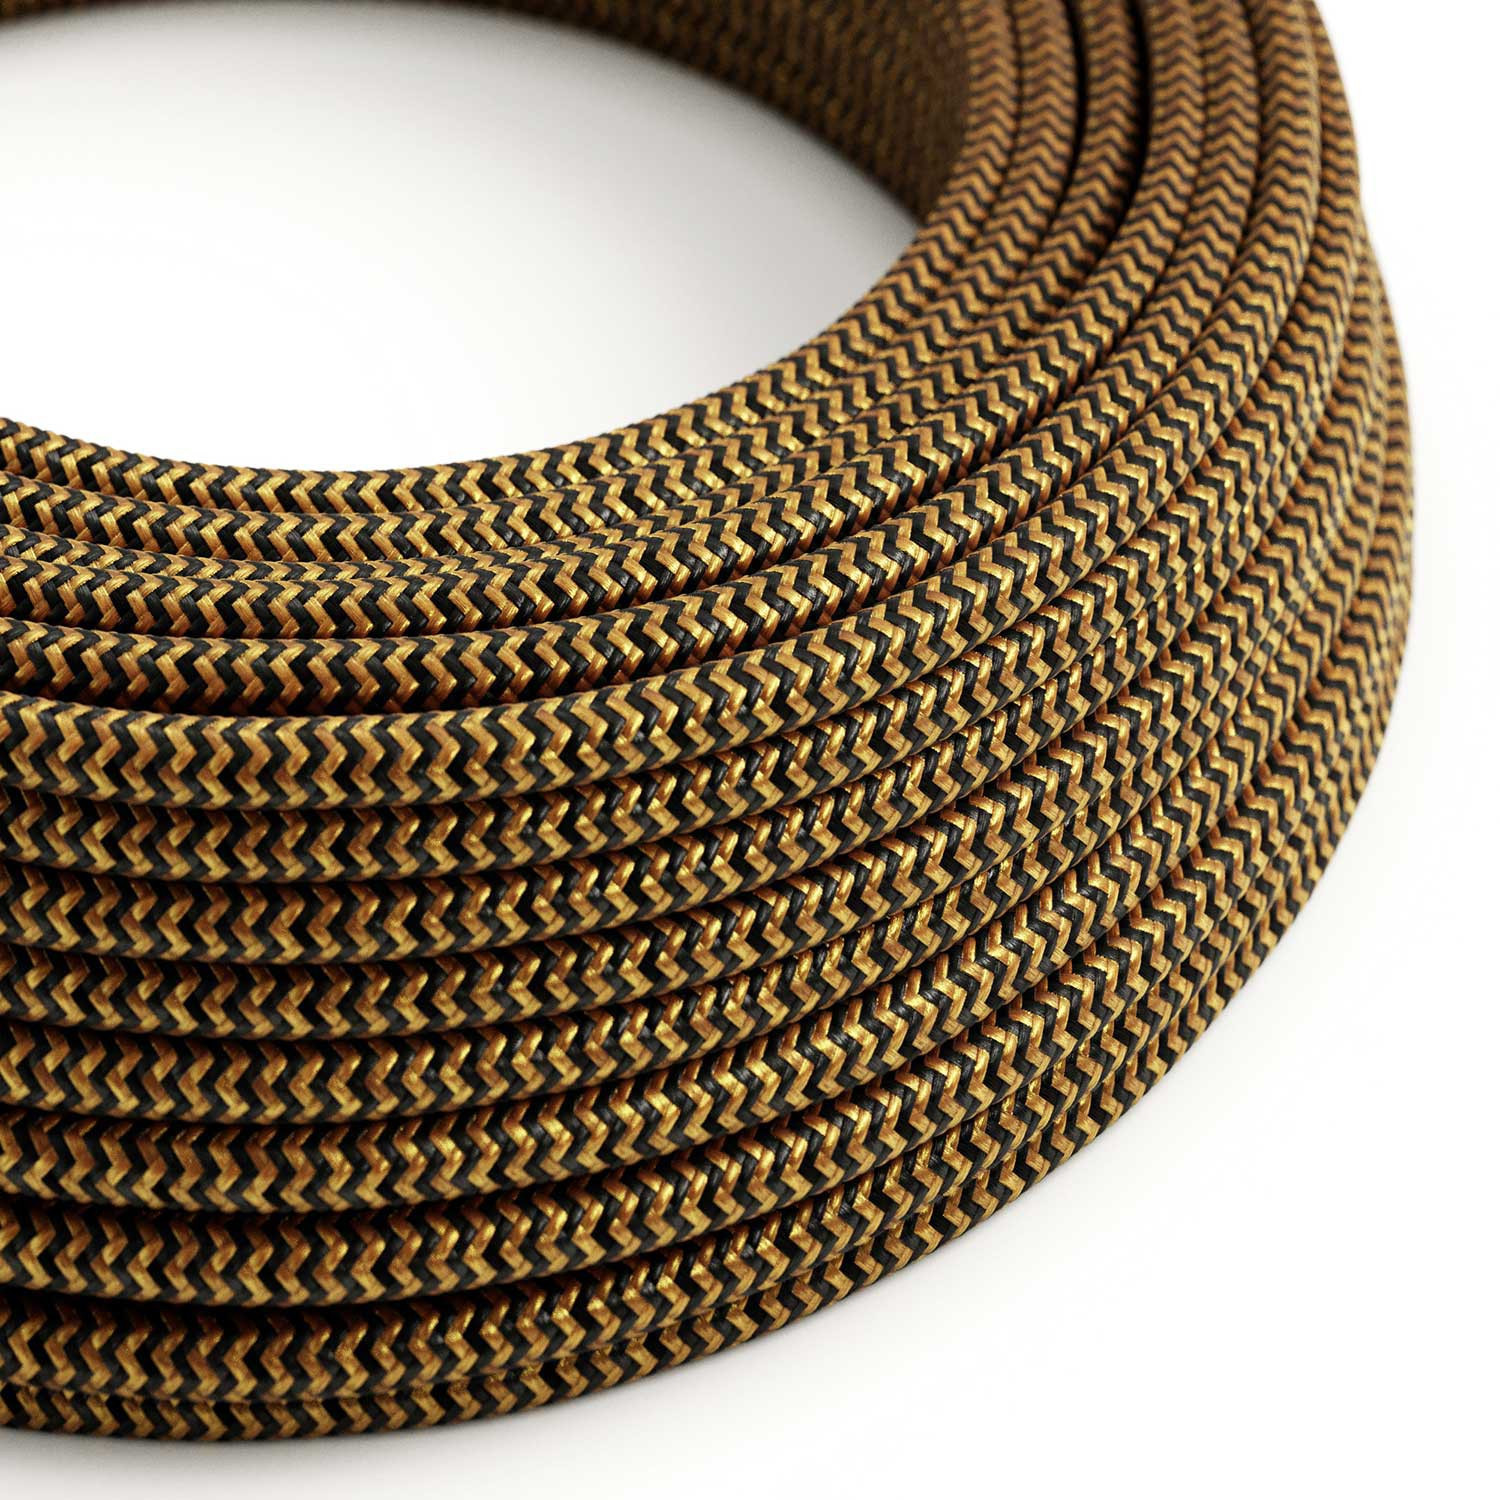 Cavo tessile Oro e Nero Carbone ZigZag lucido - L'Originale Creative-Cables - RZ24 rotondo 2x0,75mm / 3x0,75mm